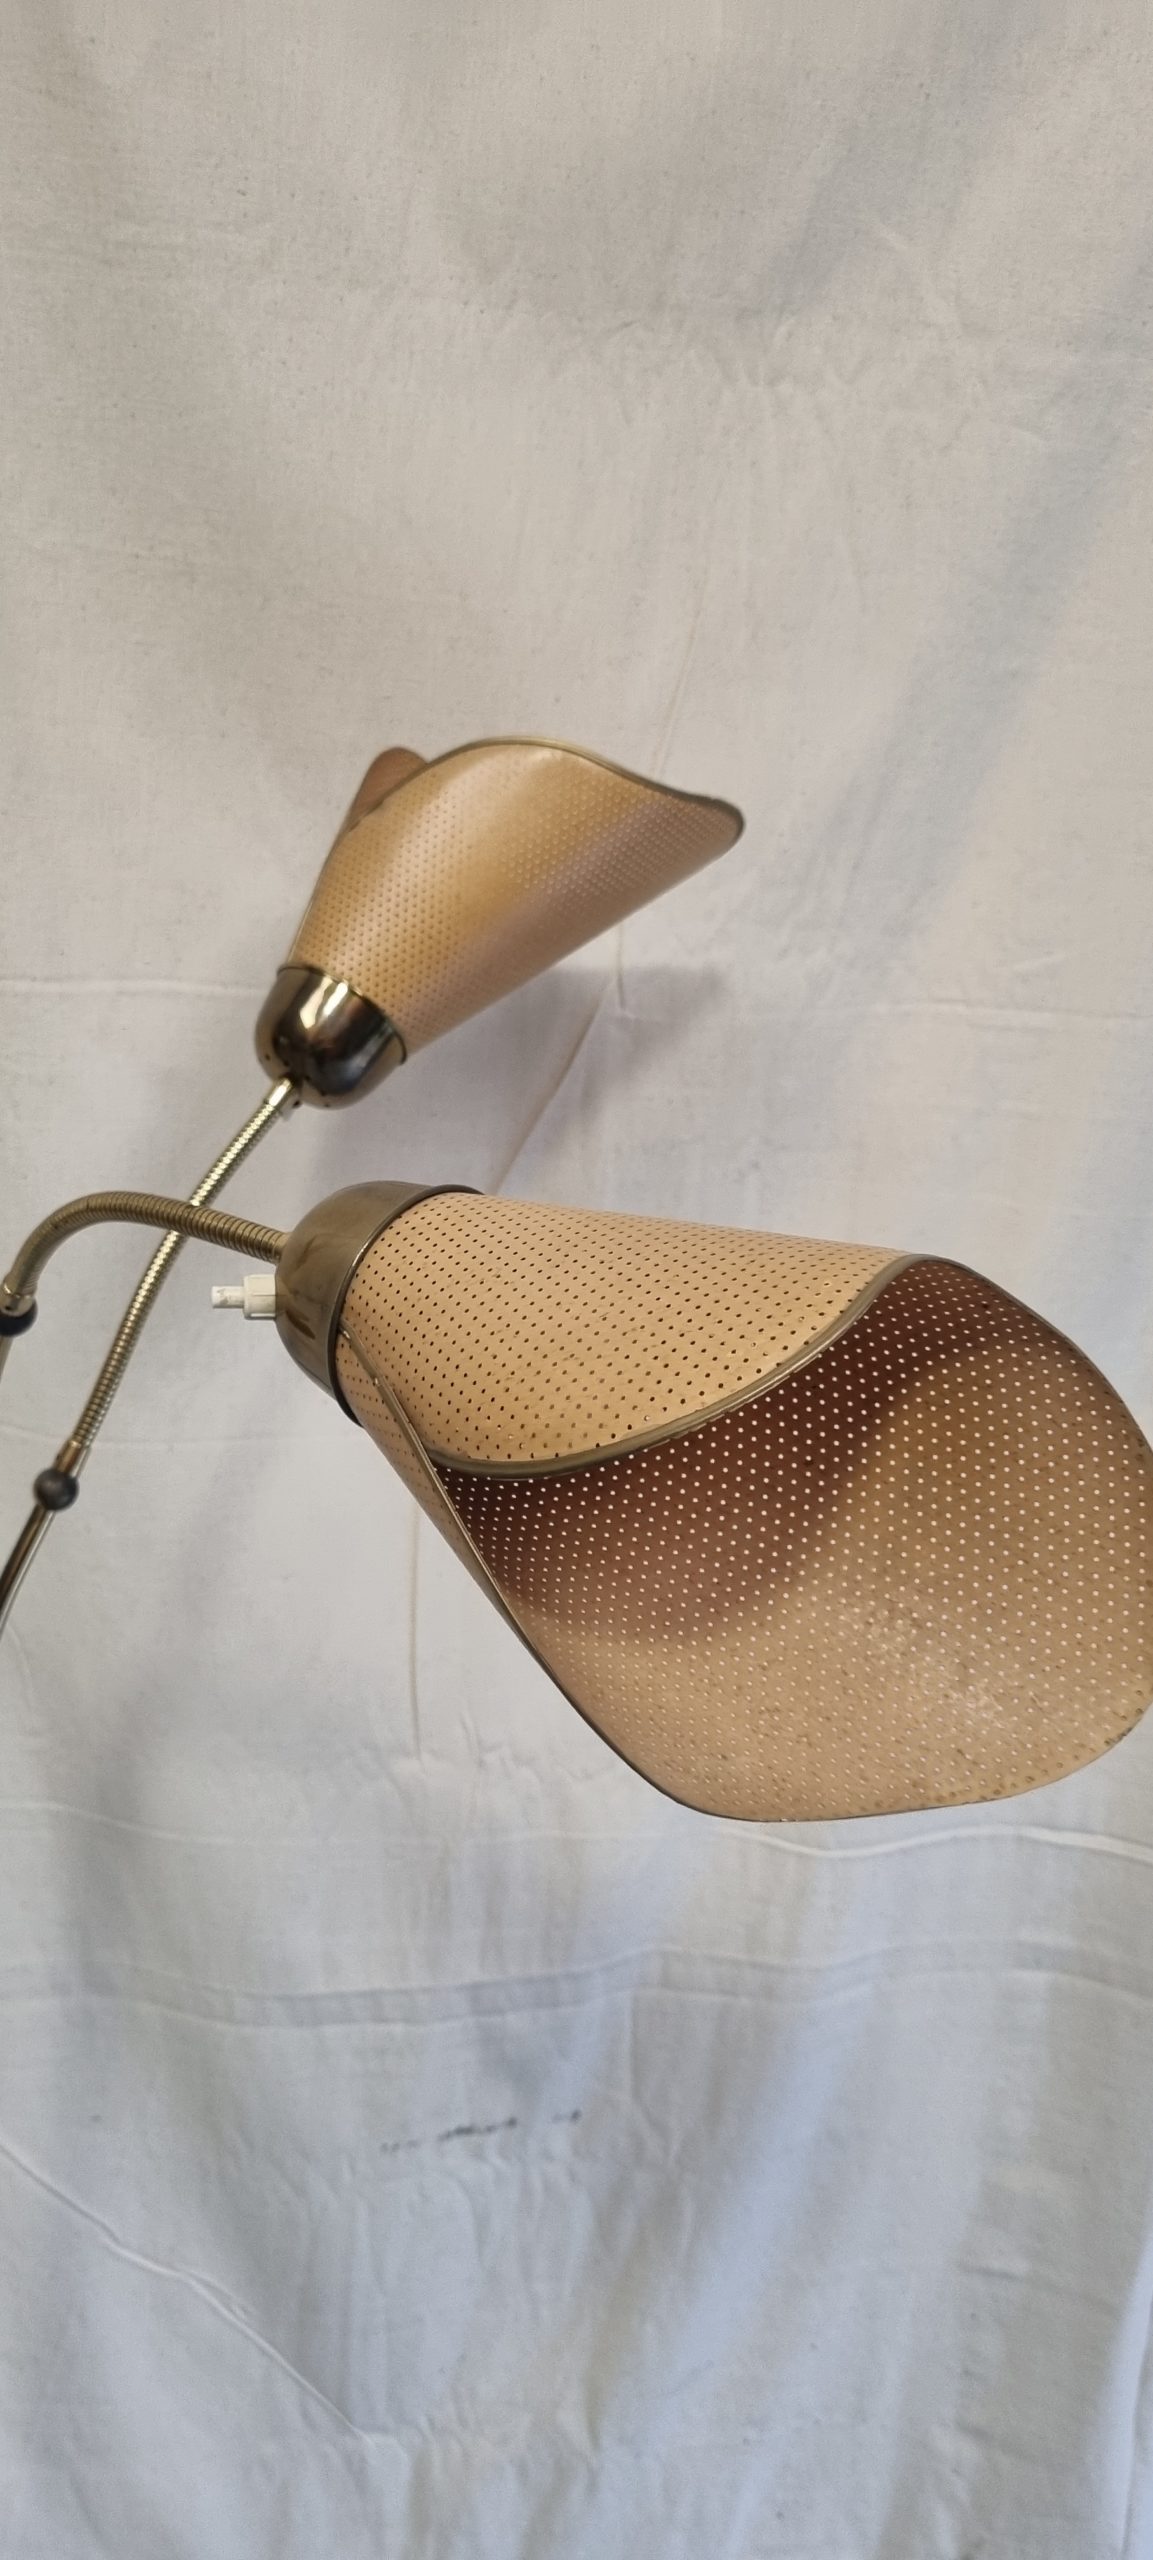 PHARE - Lampe métal brut et doré style indus - Art-Twin